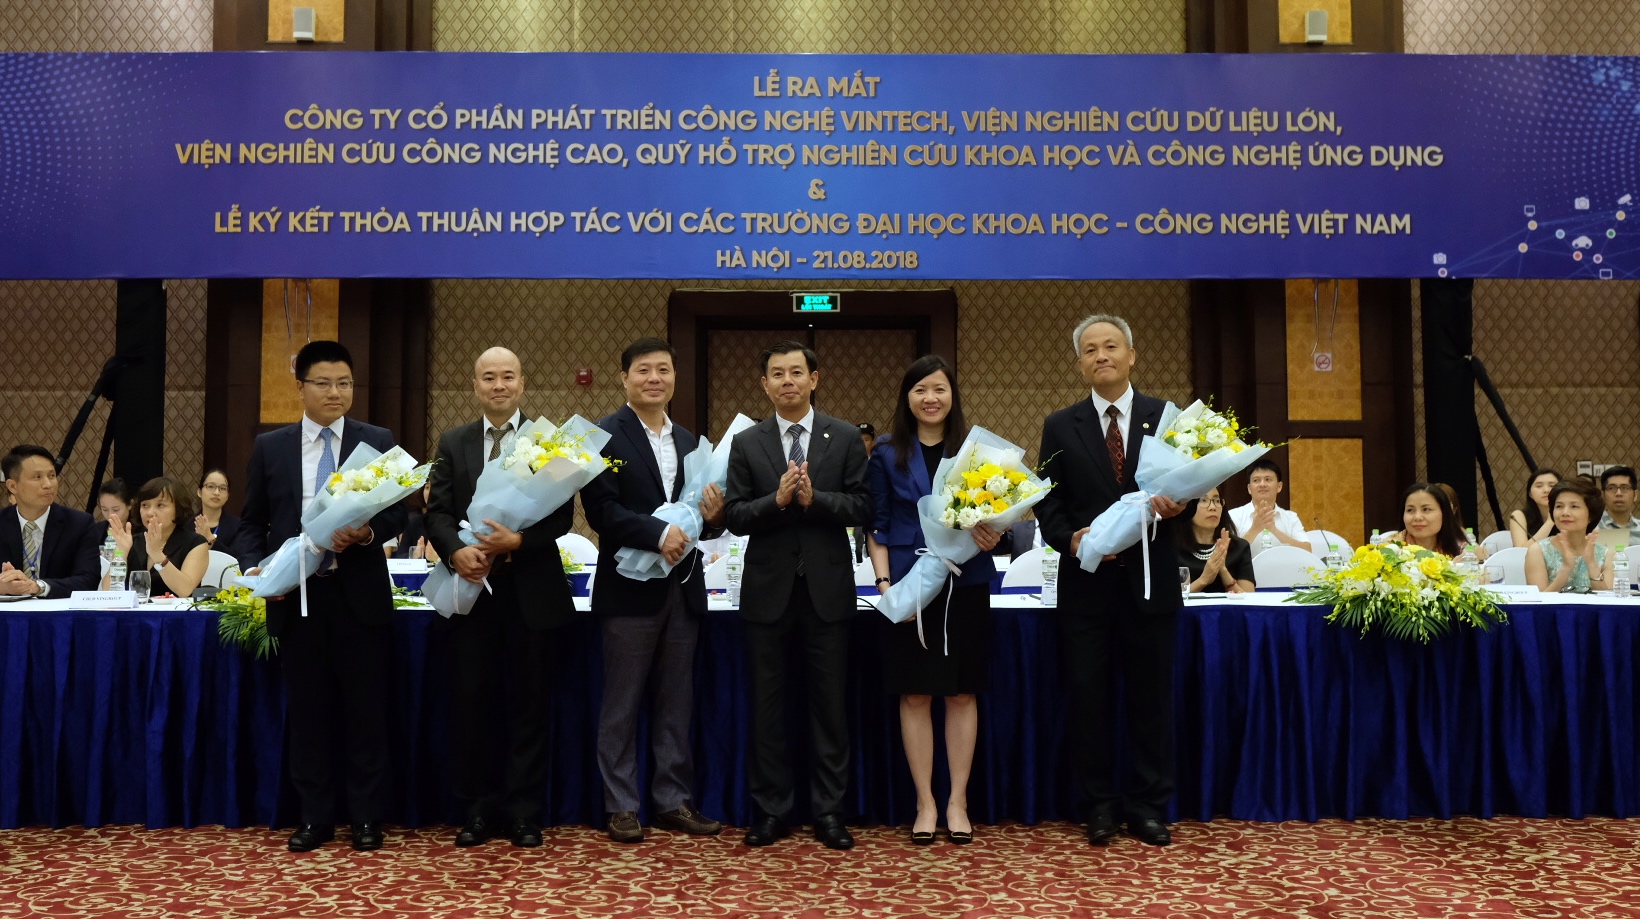 ​Vietnam’s Vingroup announces ambitious plan to become tech corporation